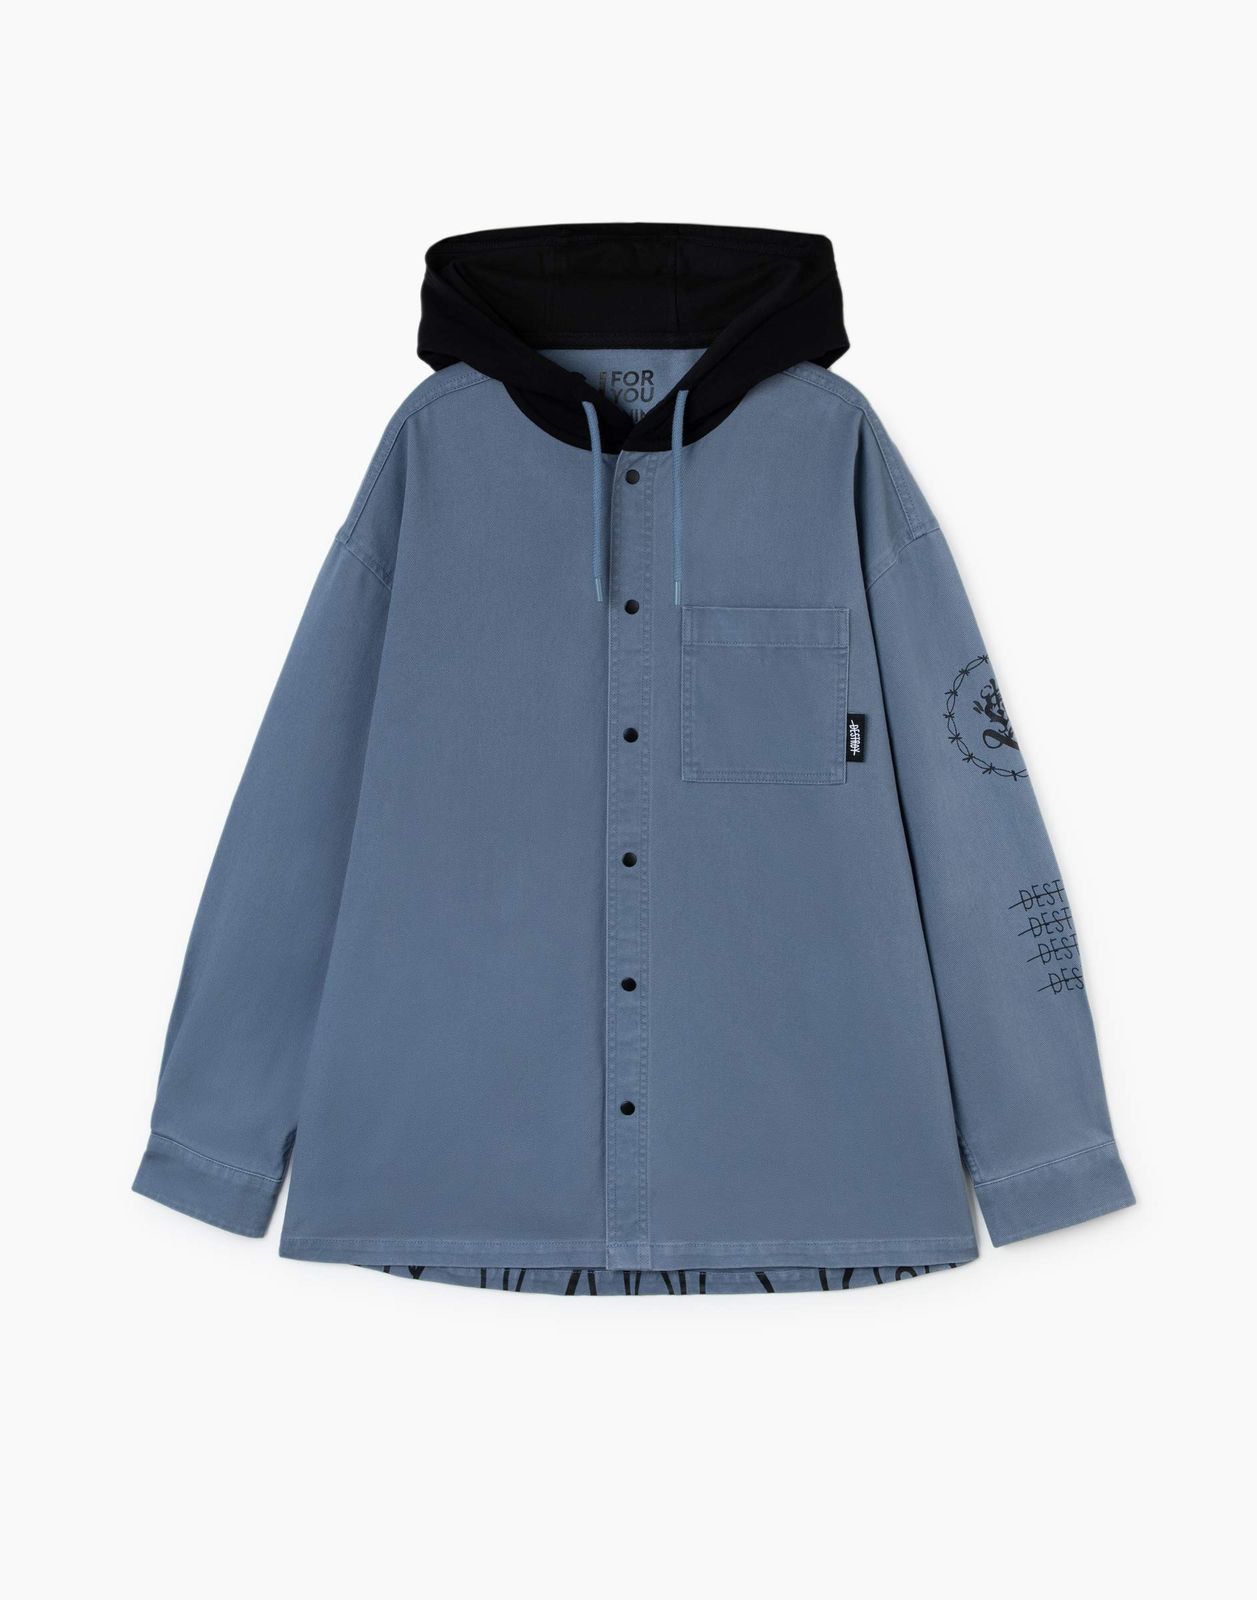 Джинсовый жакет (куртка) Gloria Jeans BJC002489 синий/серый 16-18л/182 для мальчика